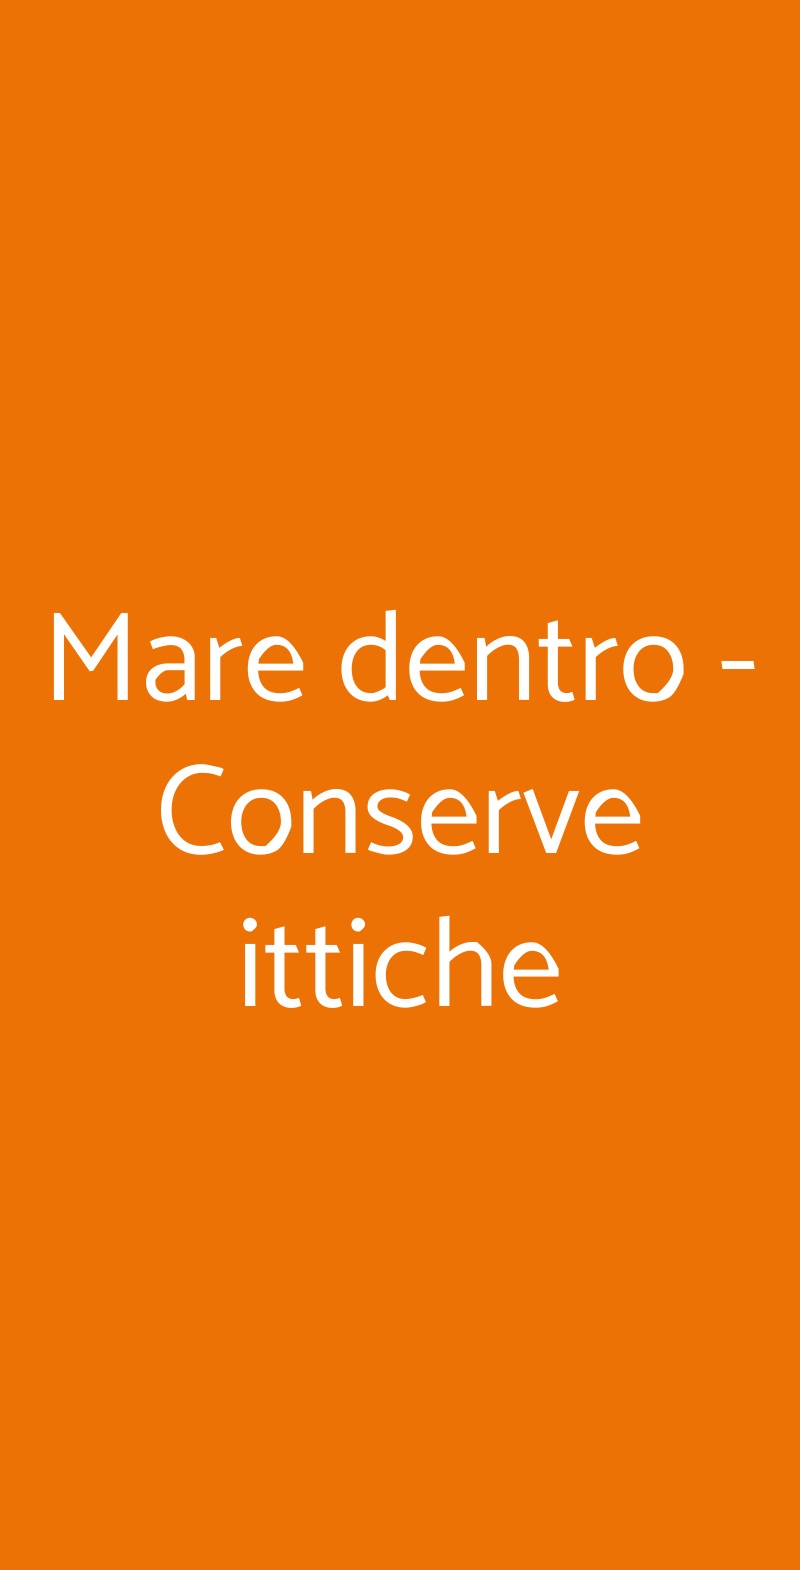 Mare dentro - Conserve ittiche Milano menù 1 pagina